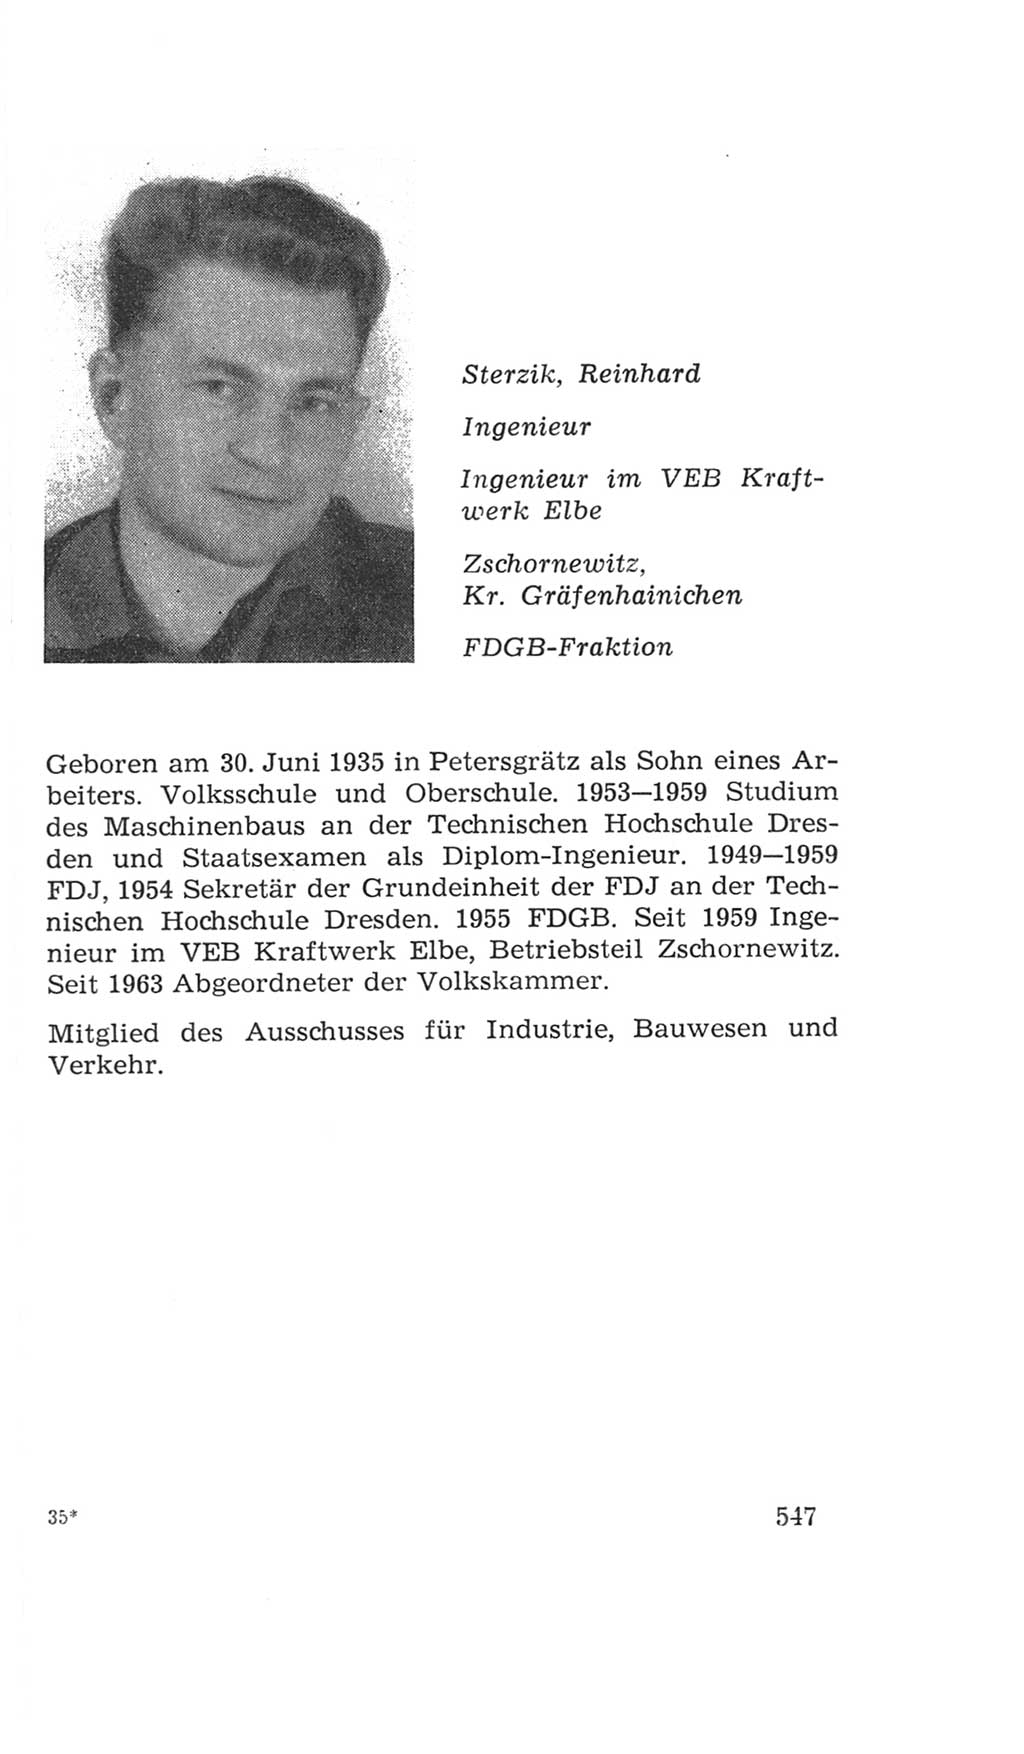 Volkskammer (VK) der Deutschen Demokratischen Republik (DDR), 4. Wahlperiode 1963-1967, Seite 547 (VK. DDR 4. WP. 1963-1967, S. 547)